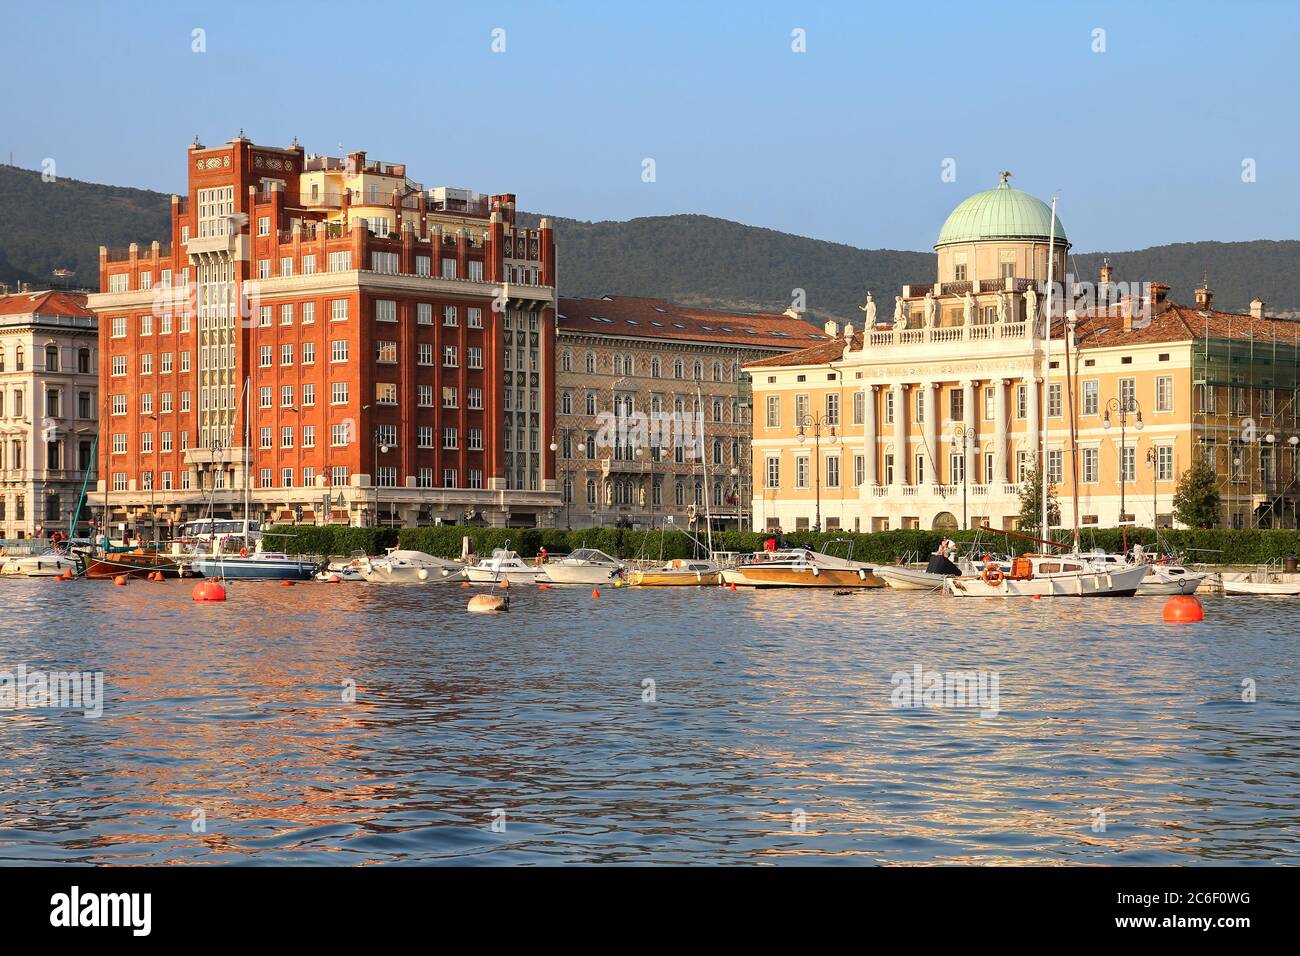 Ora d'oro sul lungomare di Trieste, Italia con 2 palazzi signorili e belli: Palazzo Aedes (in rosso) e Palazzo Carciotti. Foto Stock